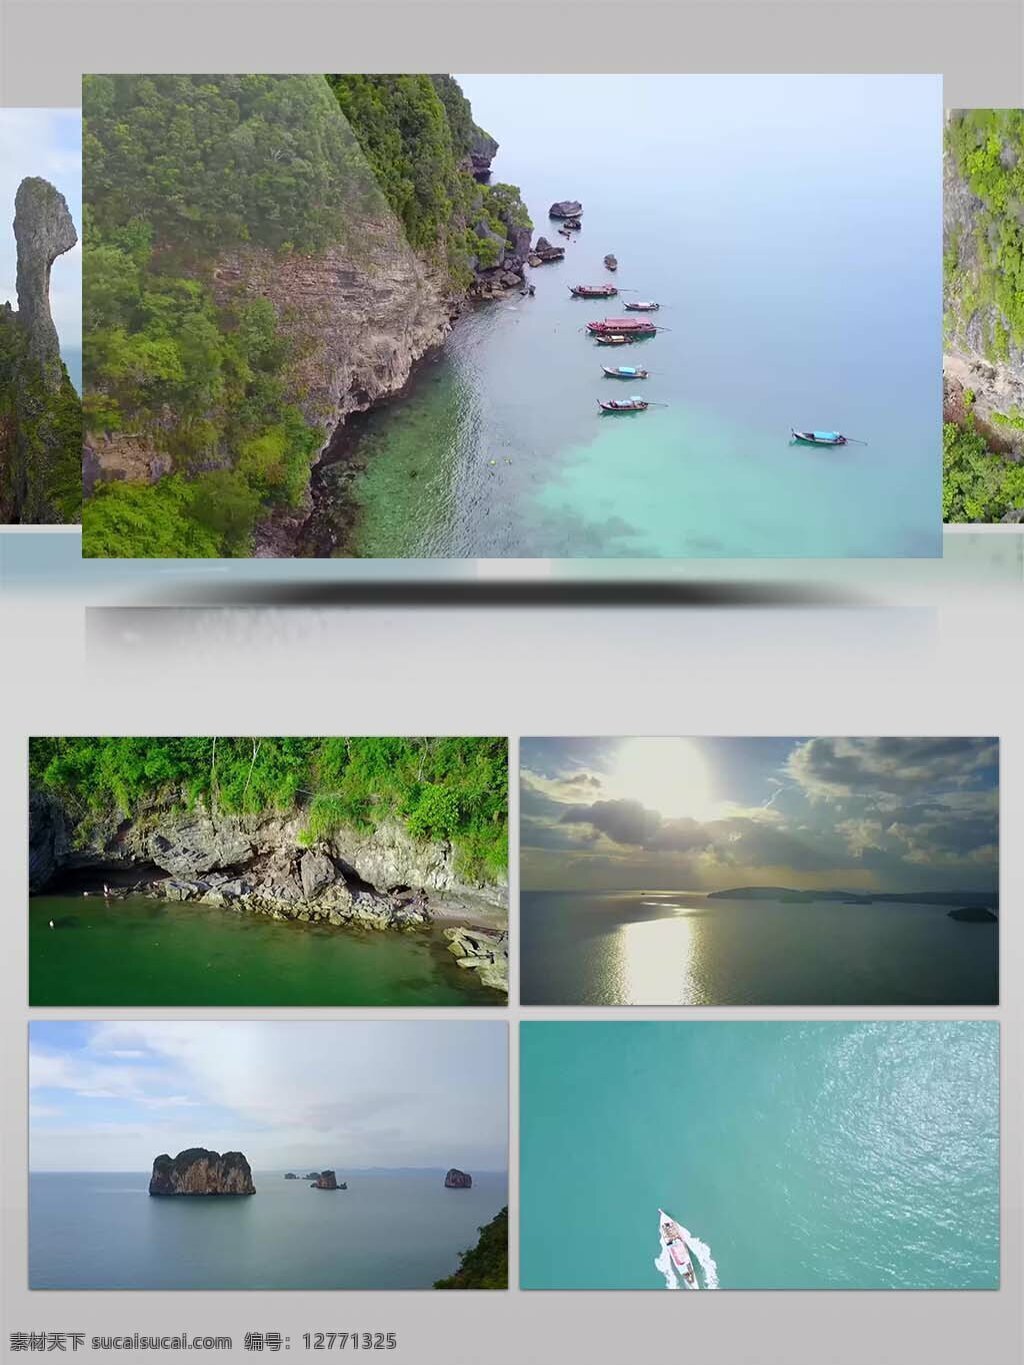 4k 超 清 甲米 旅游 宣传 视频 泰国 泰国旅游 南部 甲米府 海岸 随拍 风光 泰国风景 泰国风情 泰国佛像